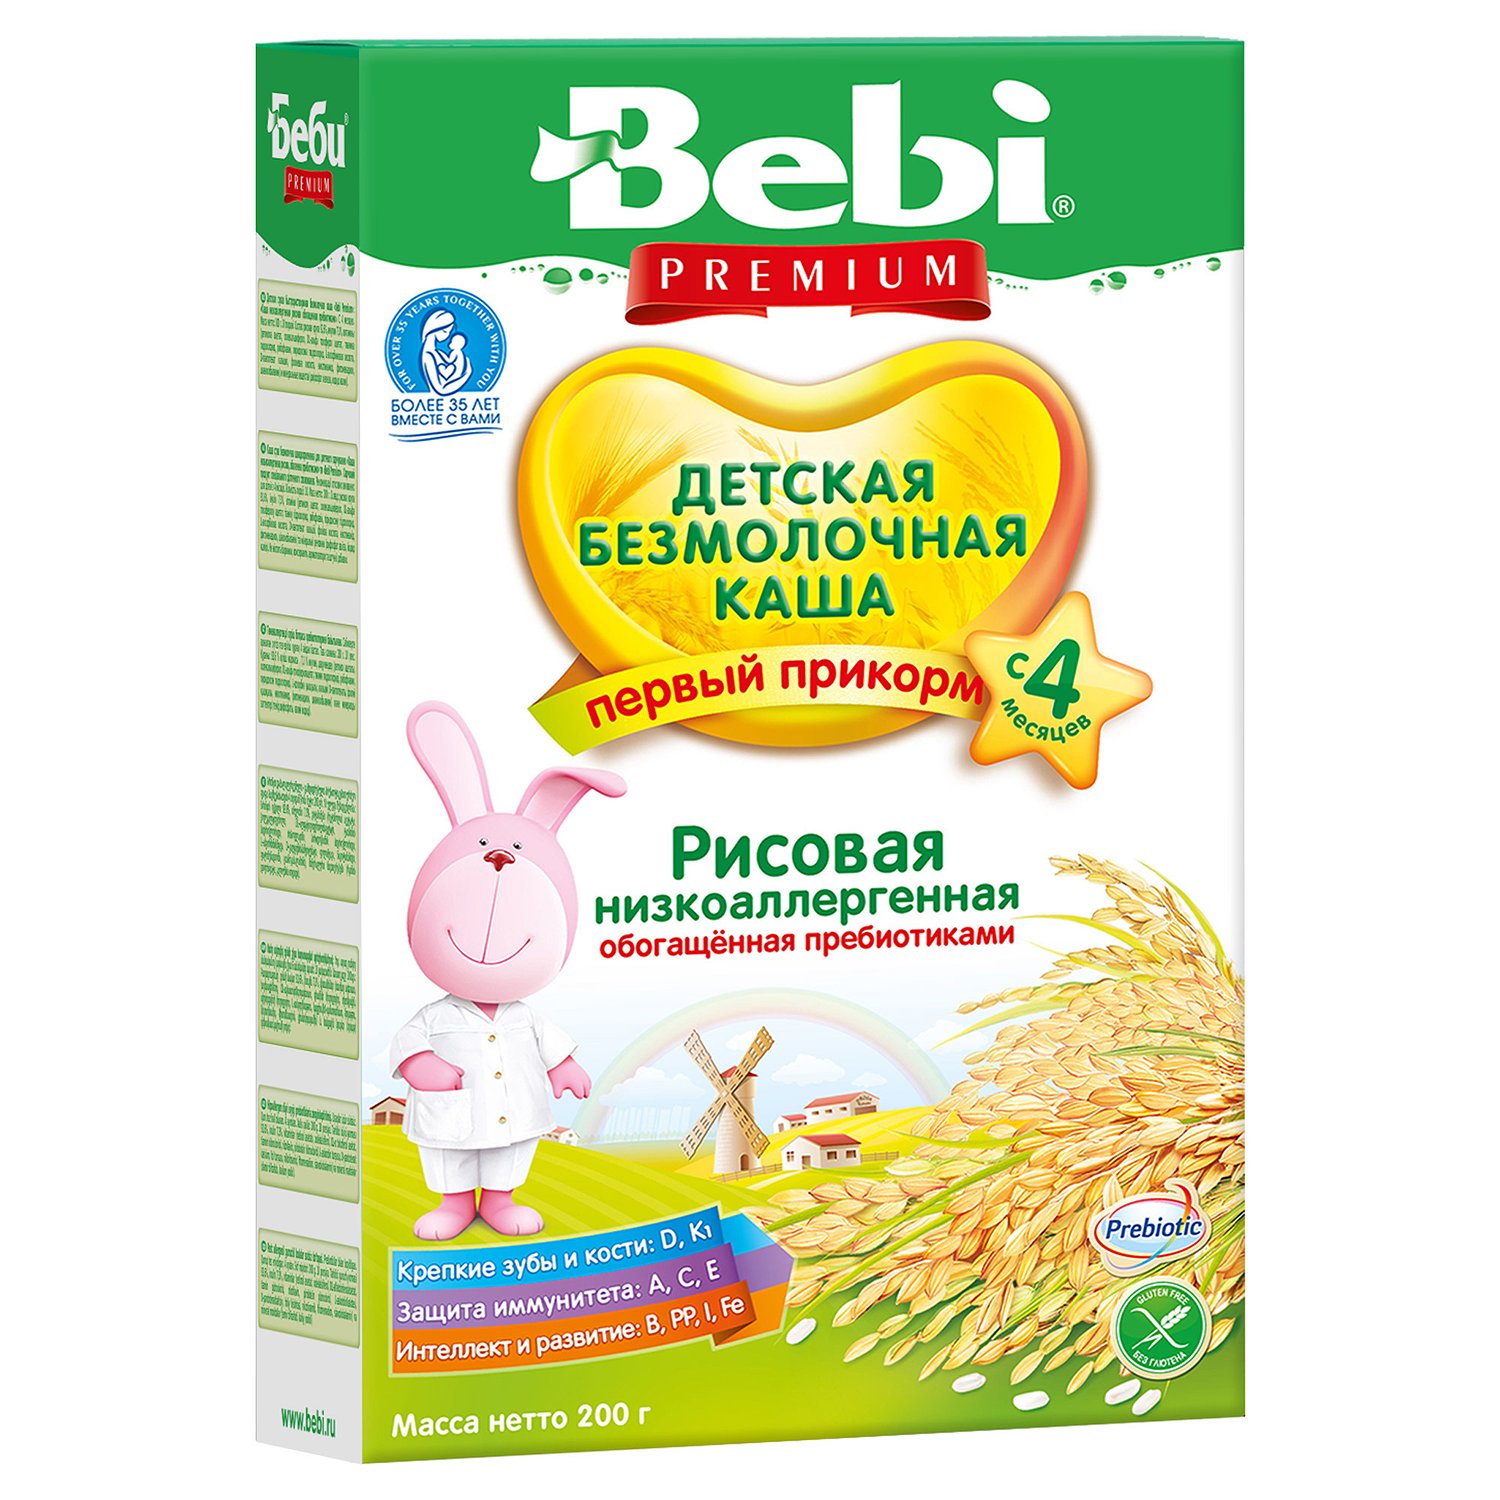 Каша Колинска Bebi Premium безмолочная рисовая низкоаллергенная 200 г с 4 месяцев - фото 1